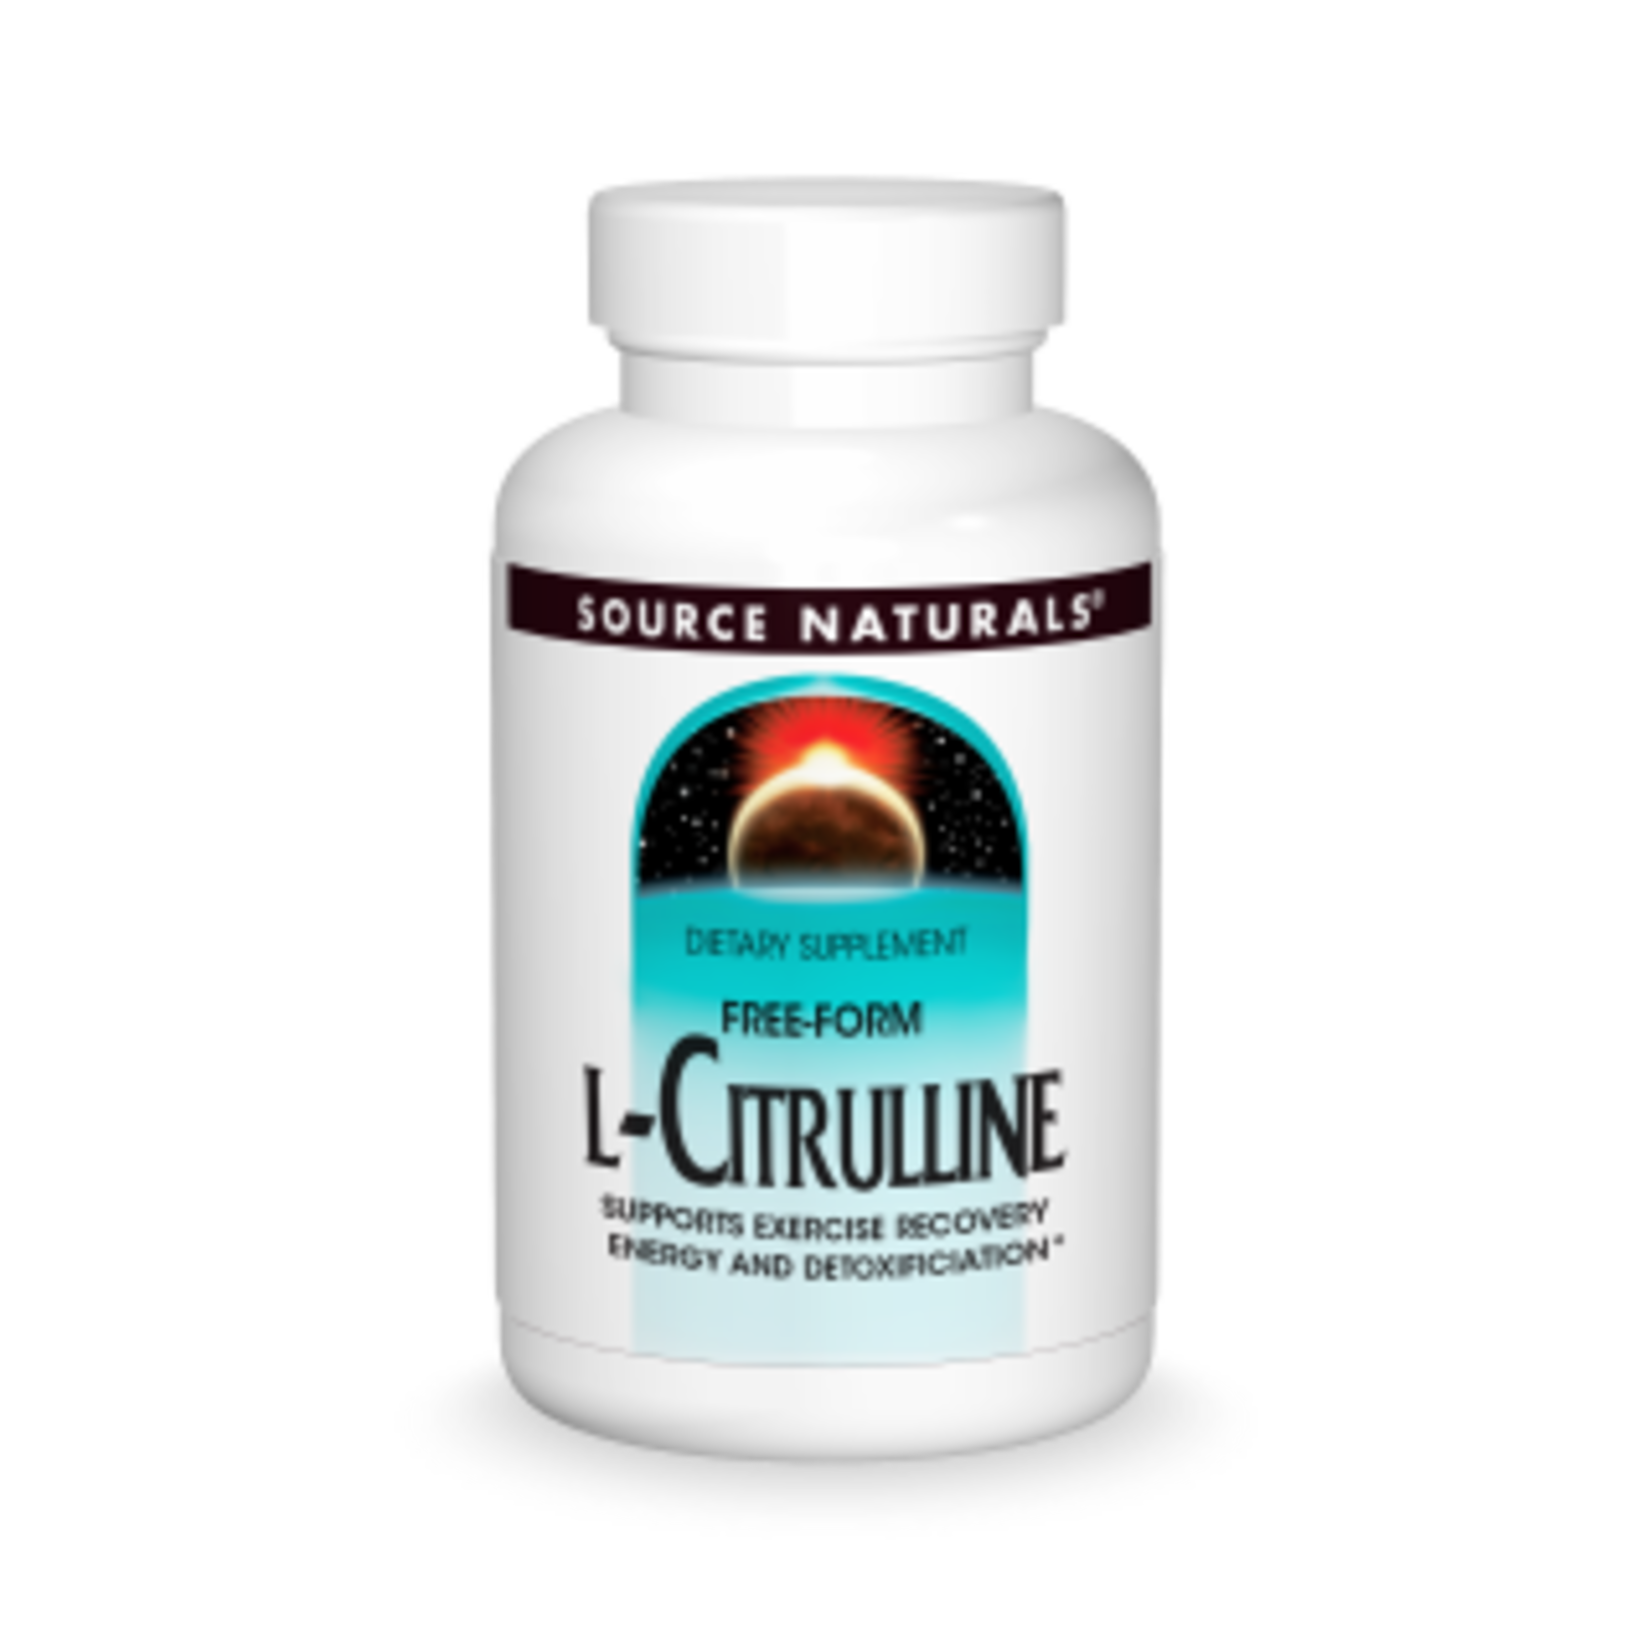 Source Naturals Source Naturals - L-Citrulline 500 mg - 60 Capsules